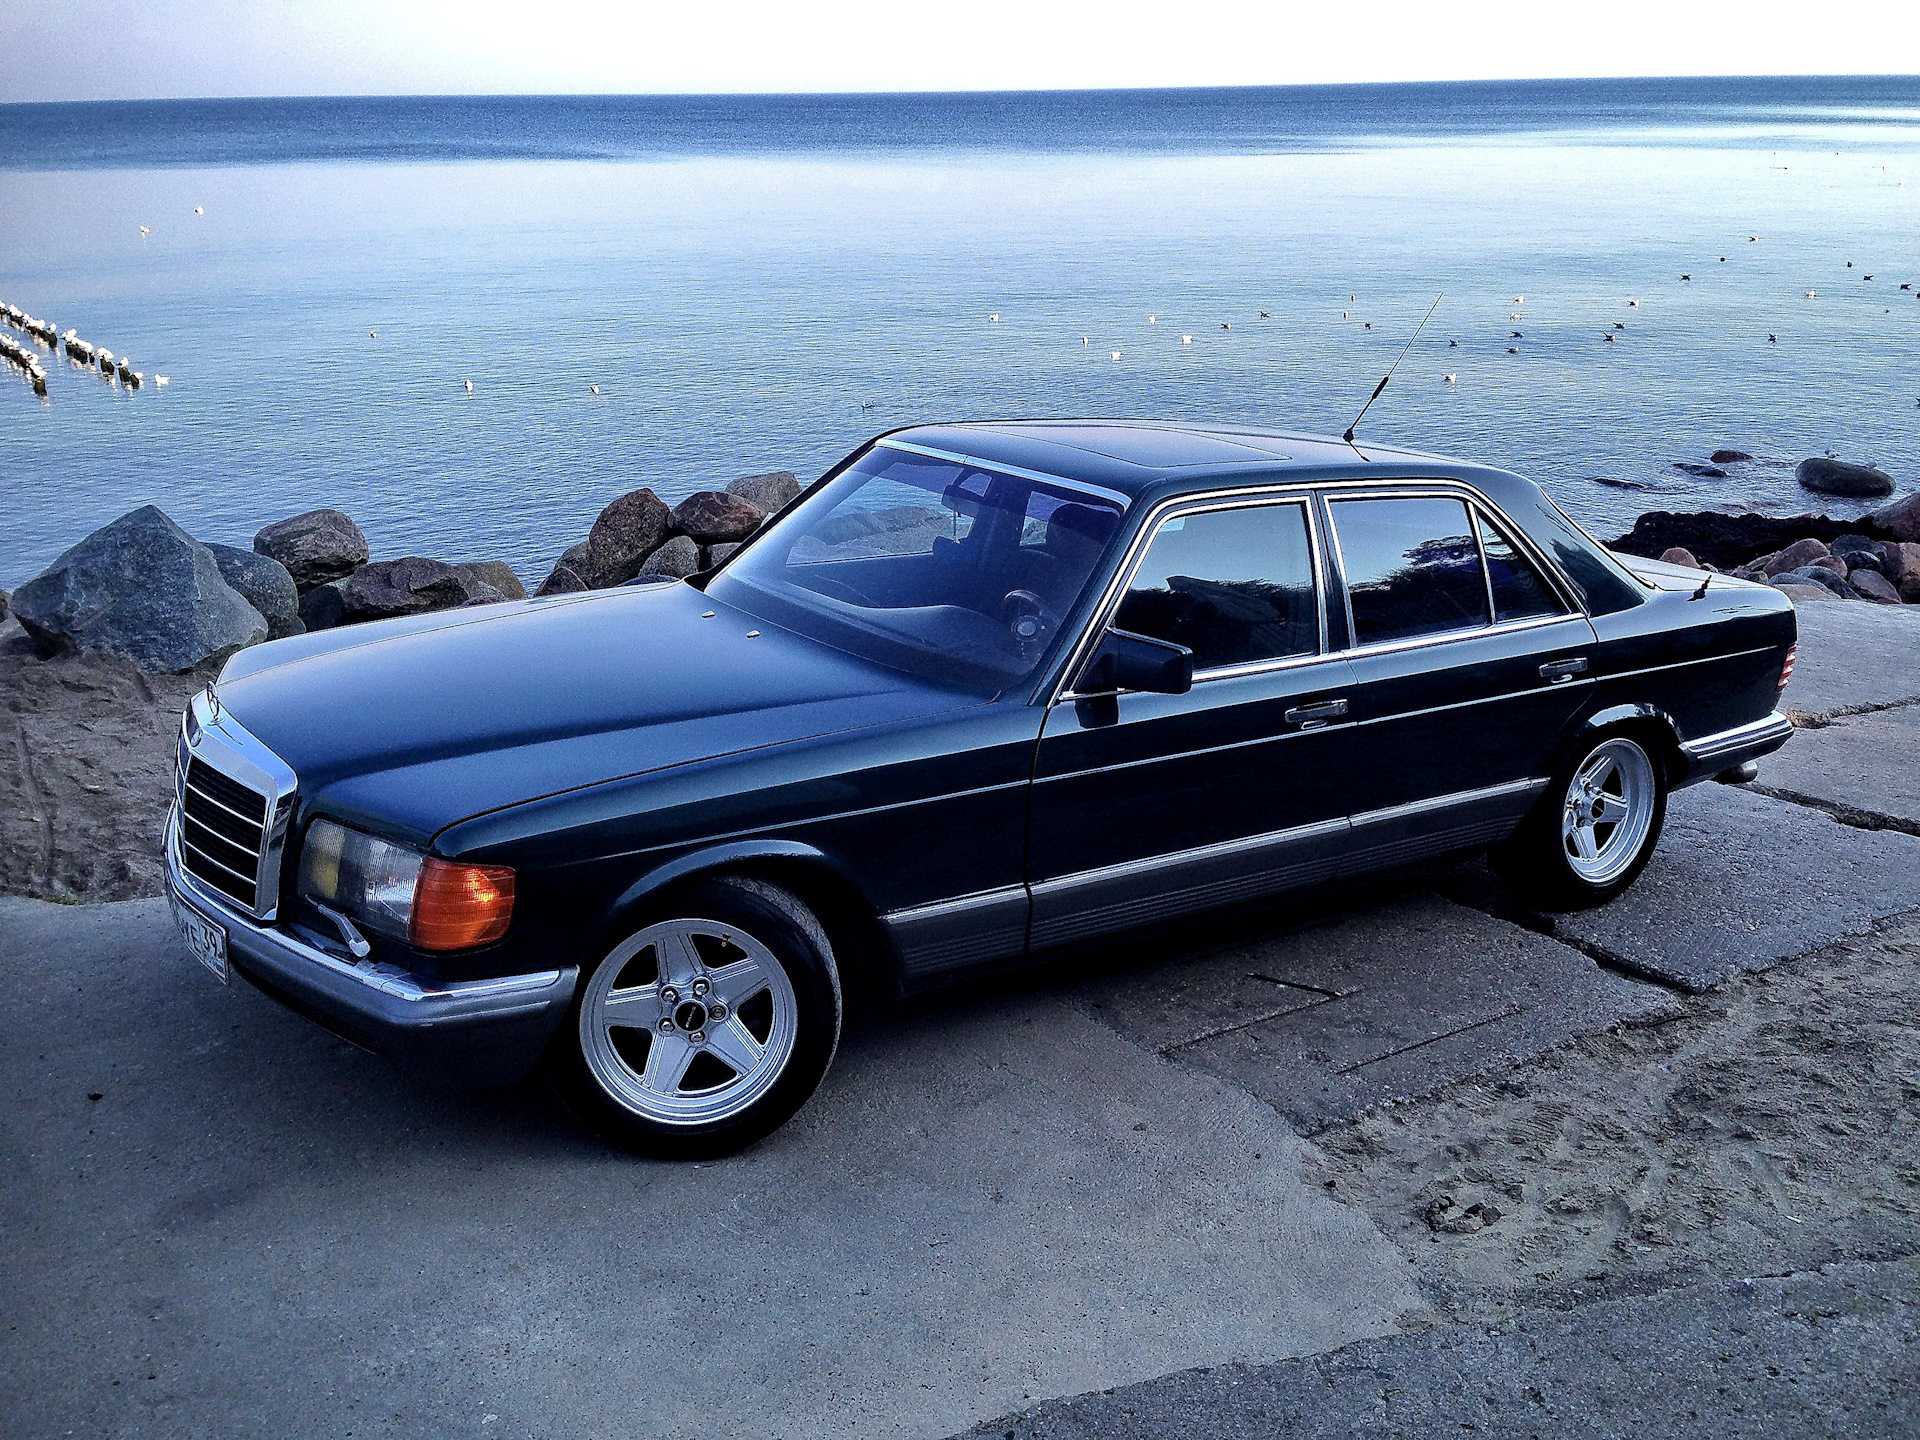 Тюнинговое ателье Inden Design обнародовало свою работу, законченную еще в 1991 году Это - Mercedes S-Class W126 1983 года выпуска Автомобиль выглядит